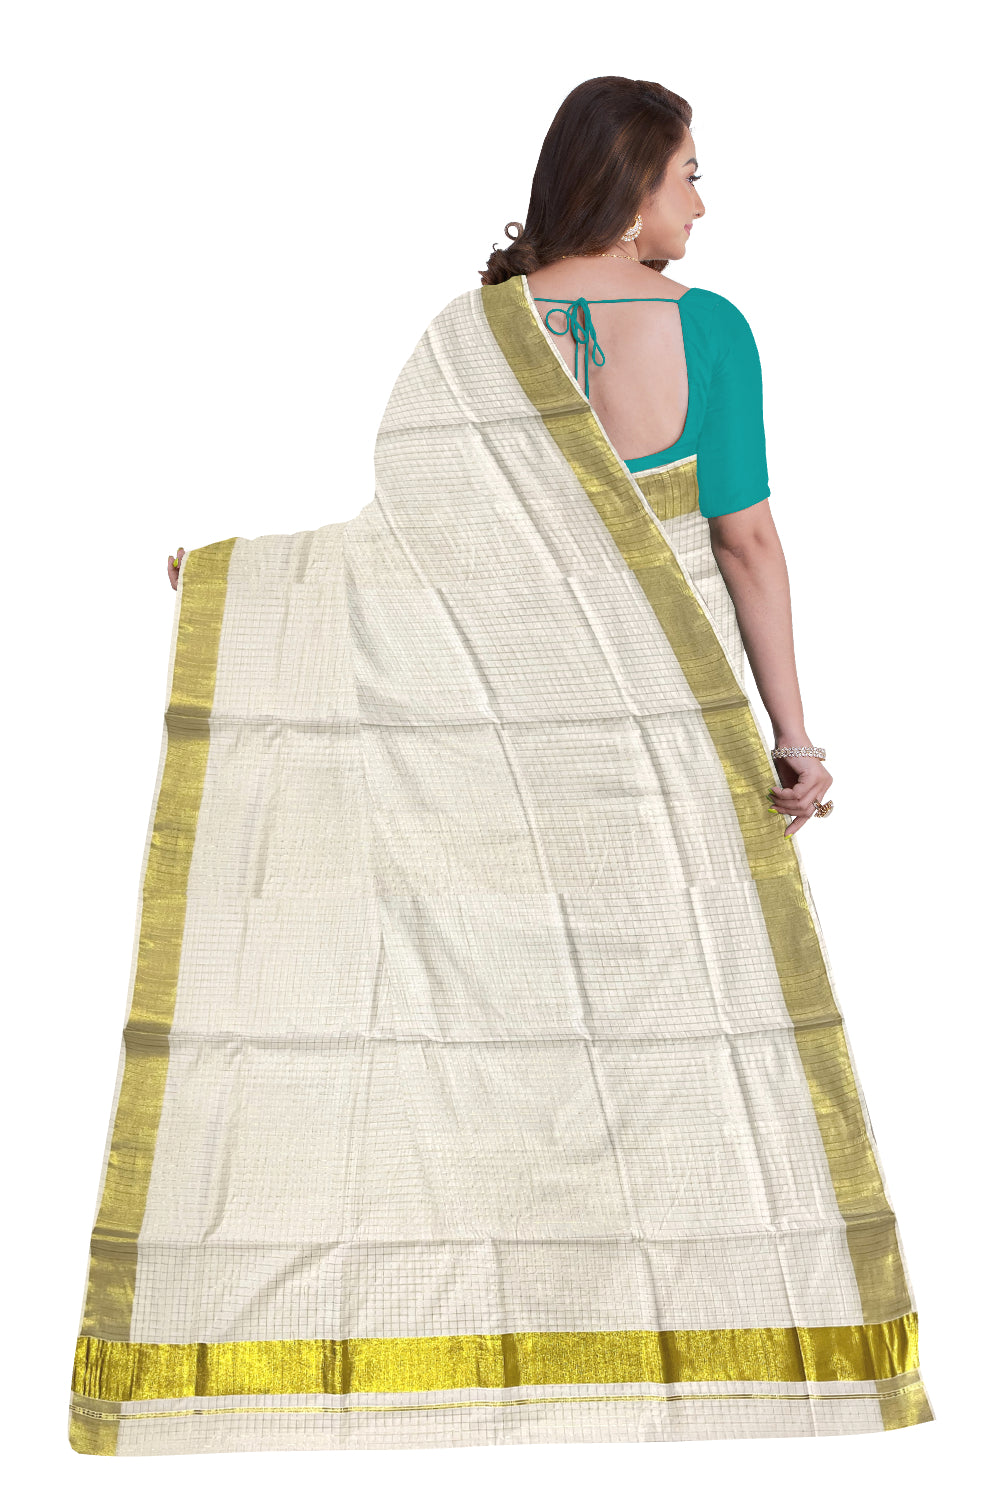 Kerala Cotton Kasavu Check Design Saree with 3x3 Border